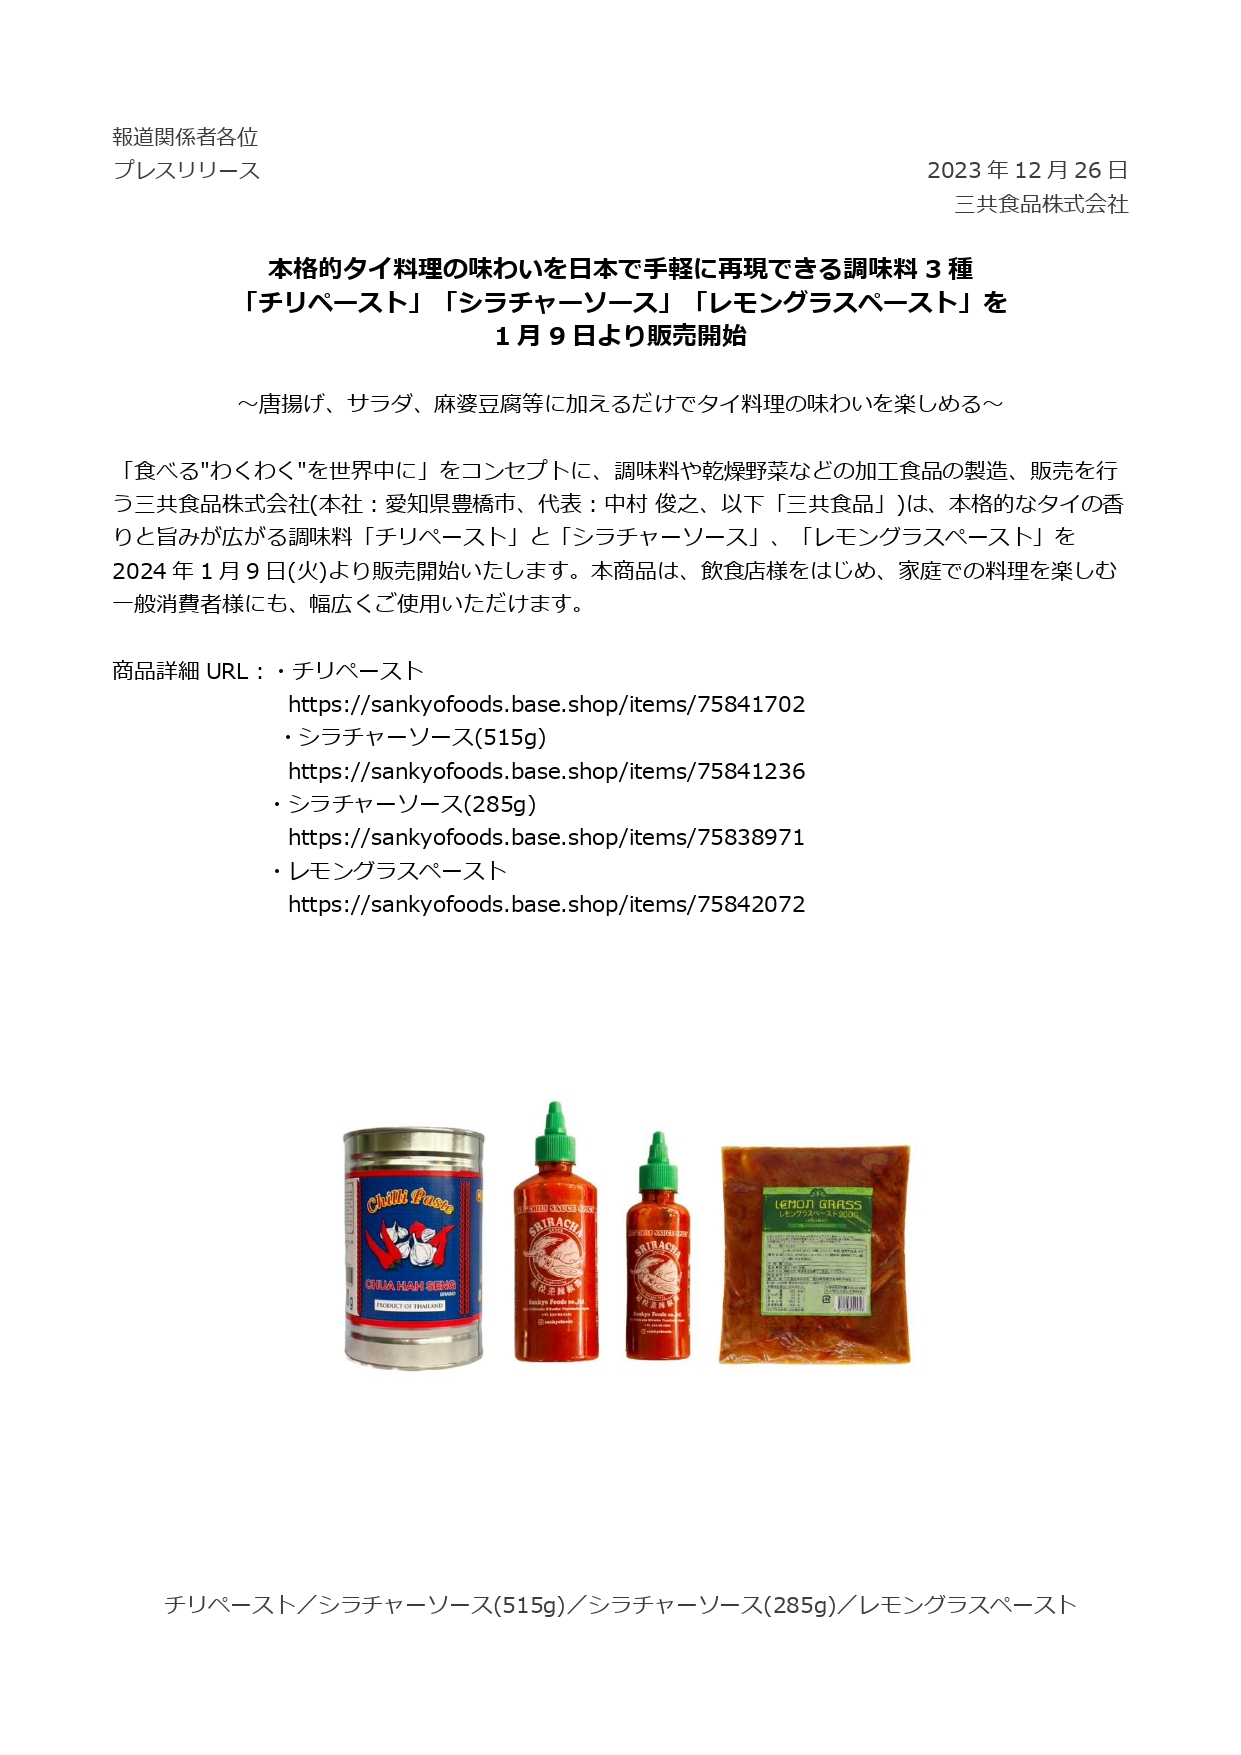 新商品「チリペースト」「シラチャ―ソース」「レモングラスペースト」を2024年1月9日より販売開始